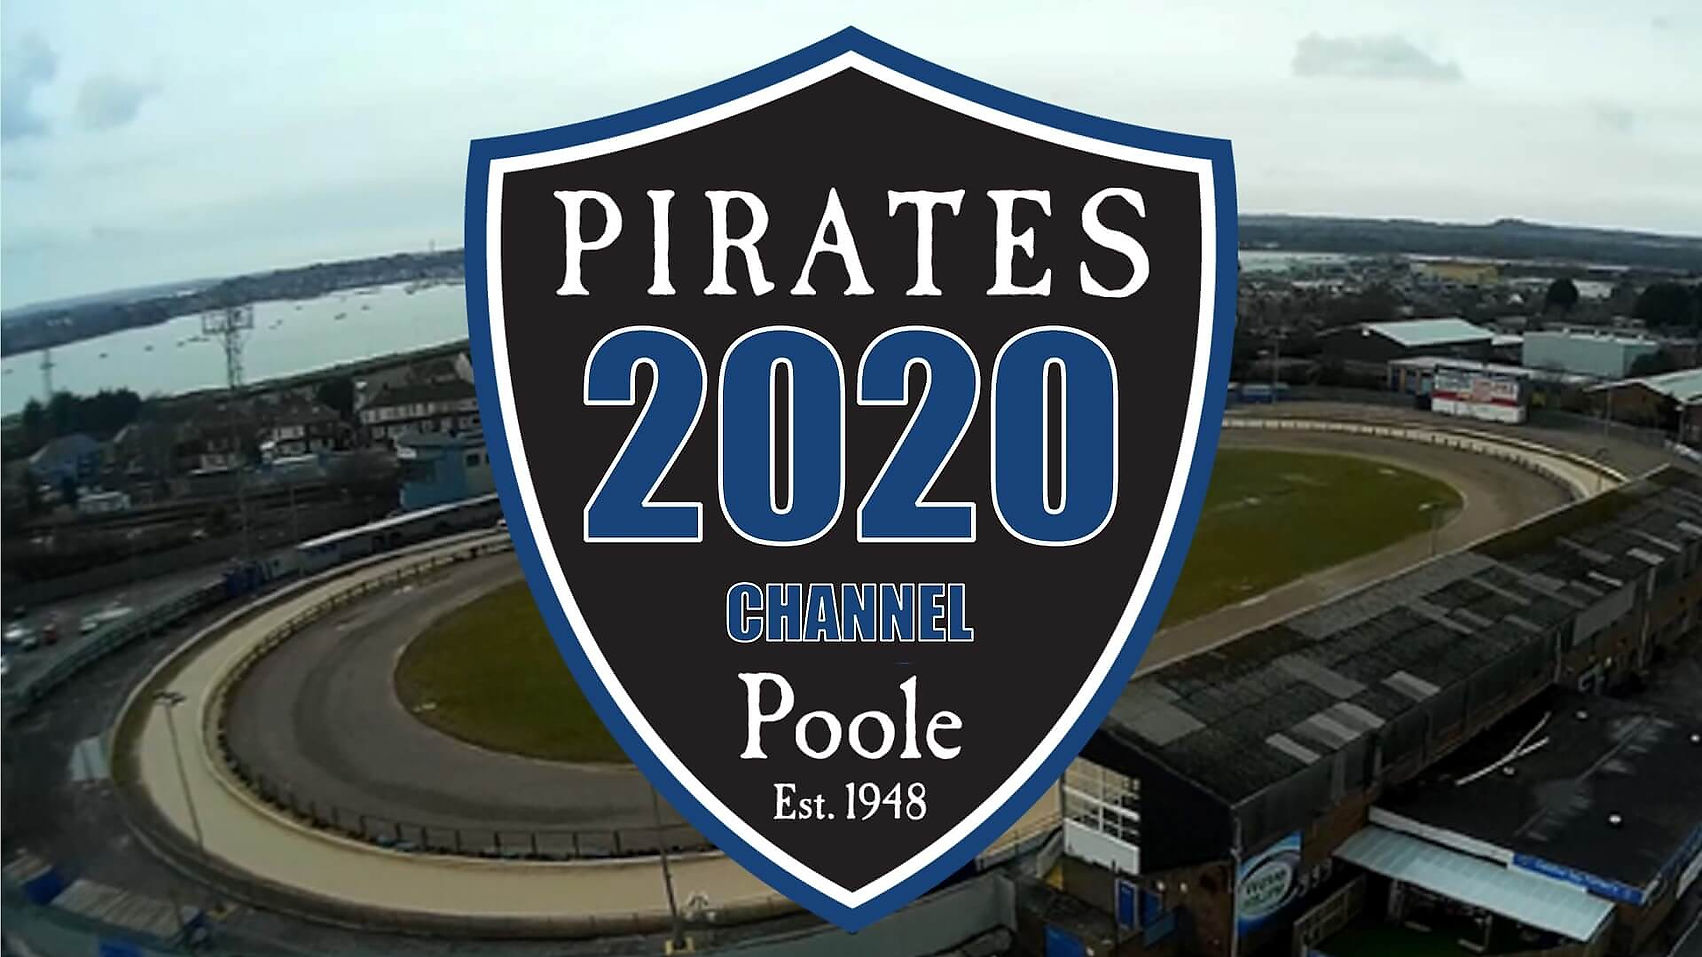 Poole Pirates 2020